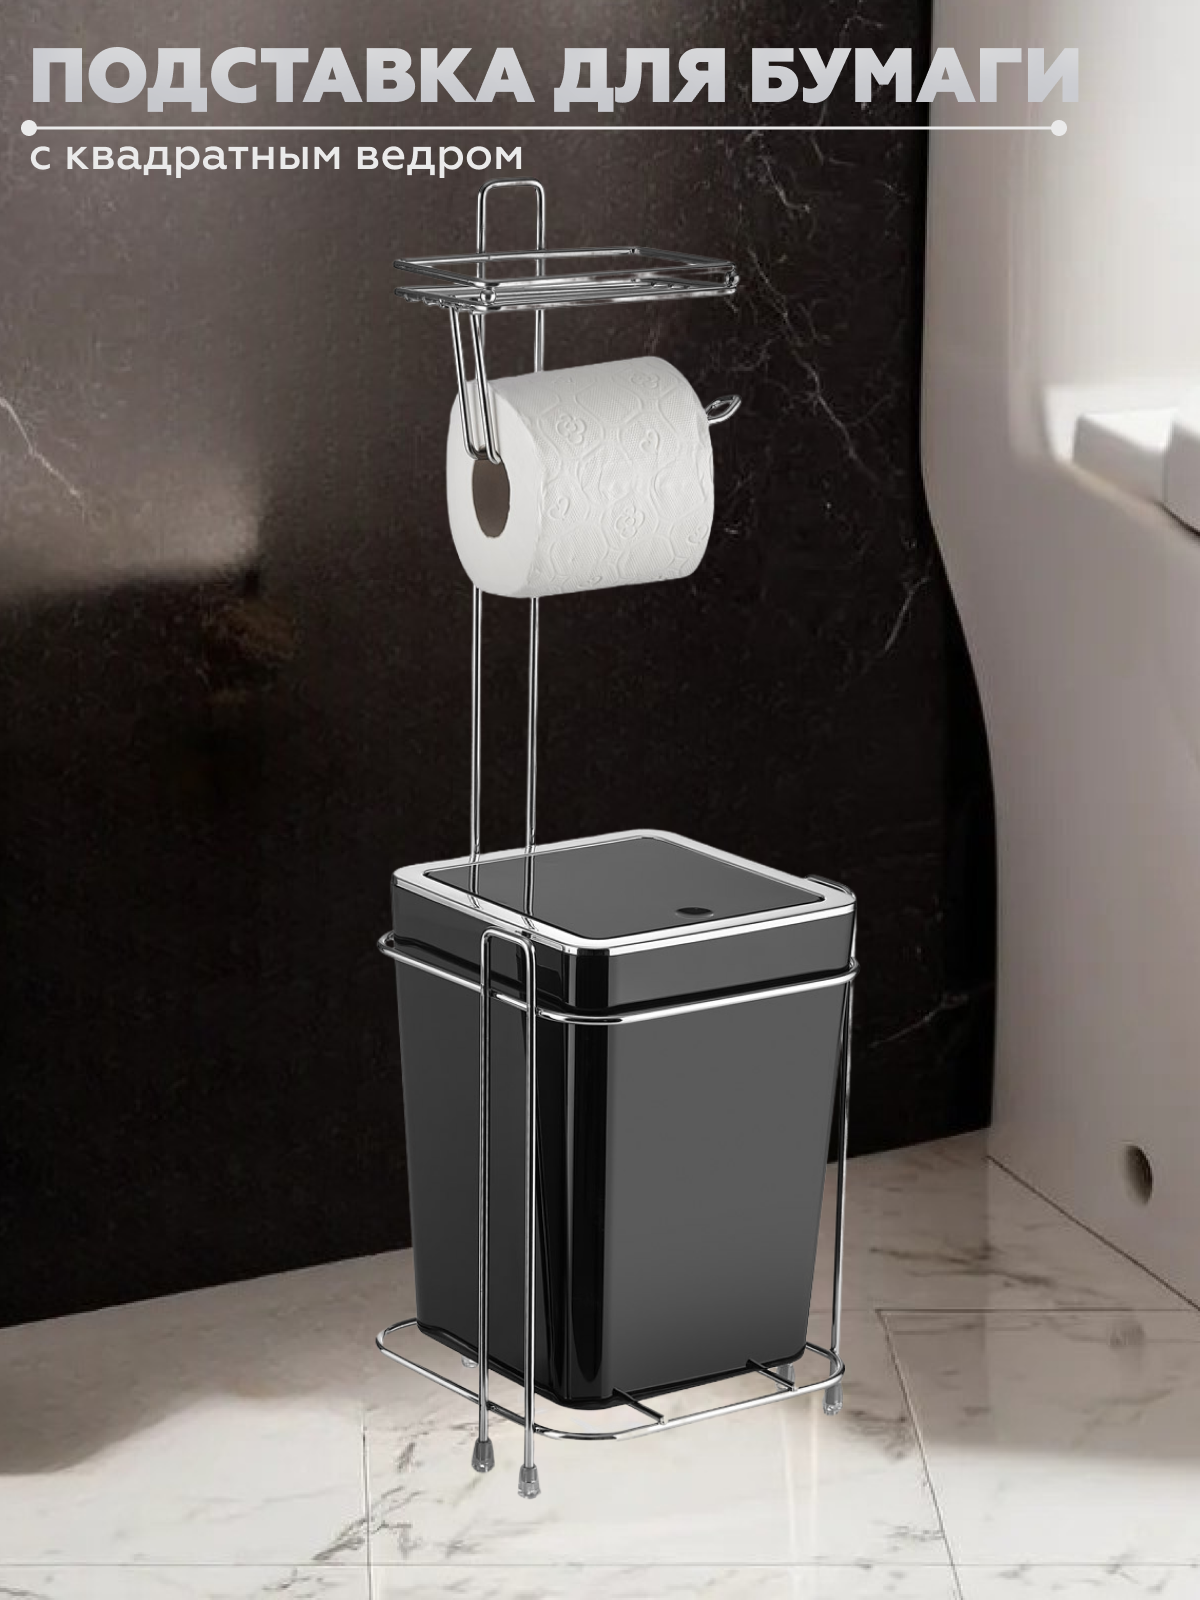 Держатель для туалетной бумаги Vialex с квадратным ведром KB255